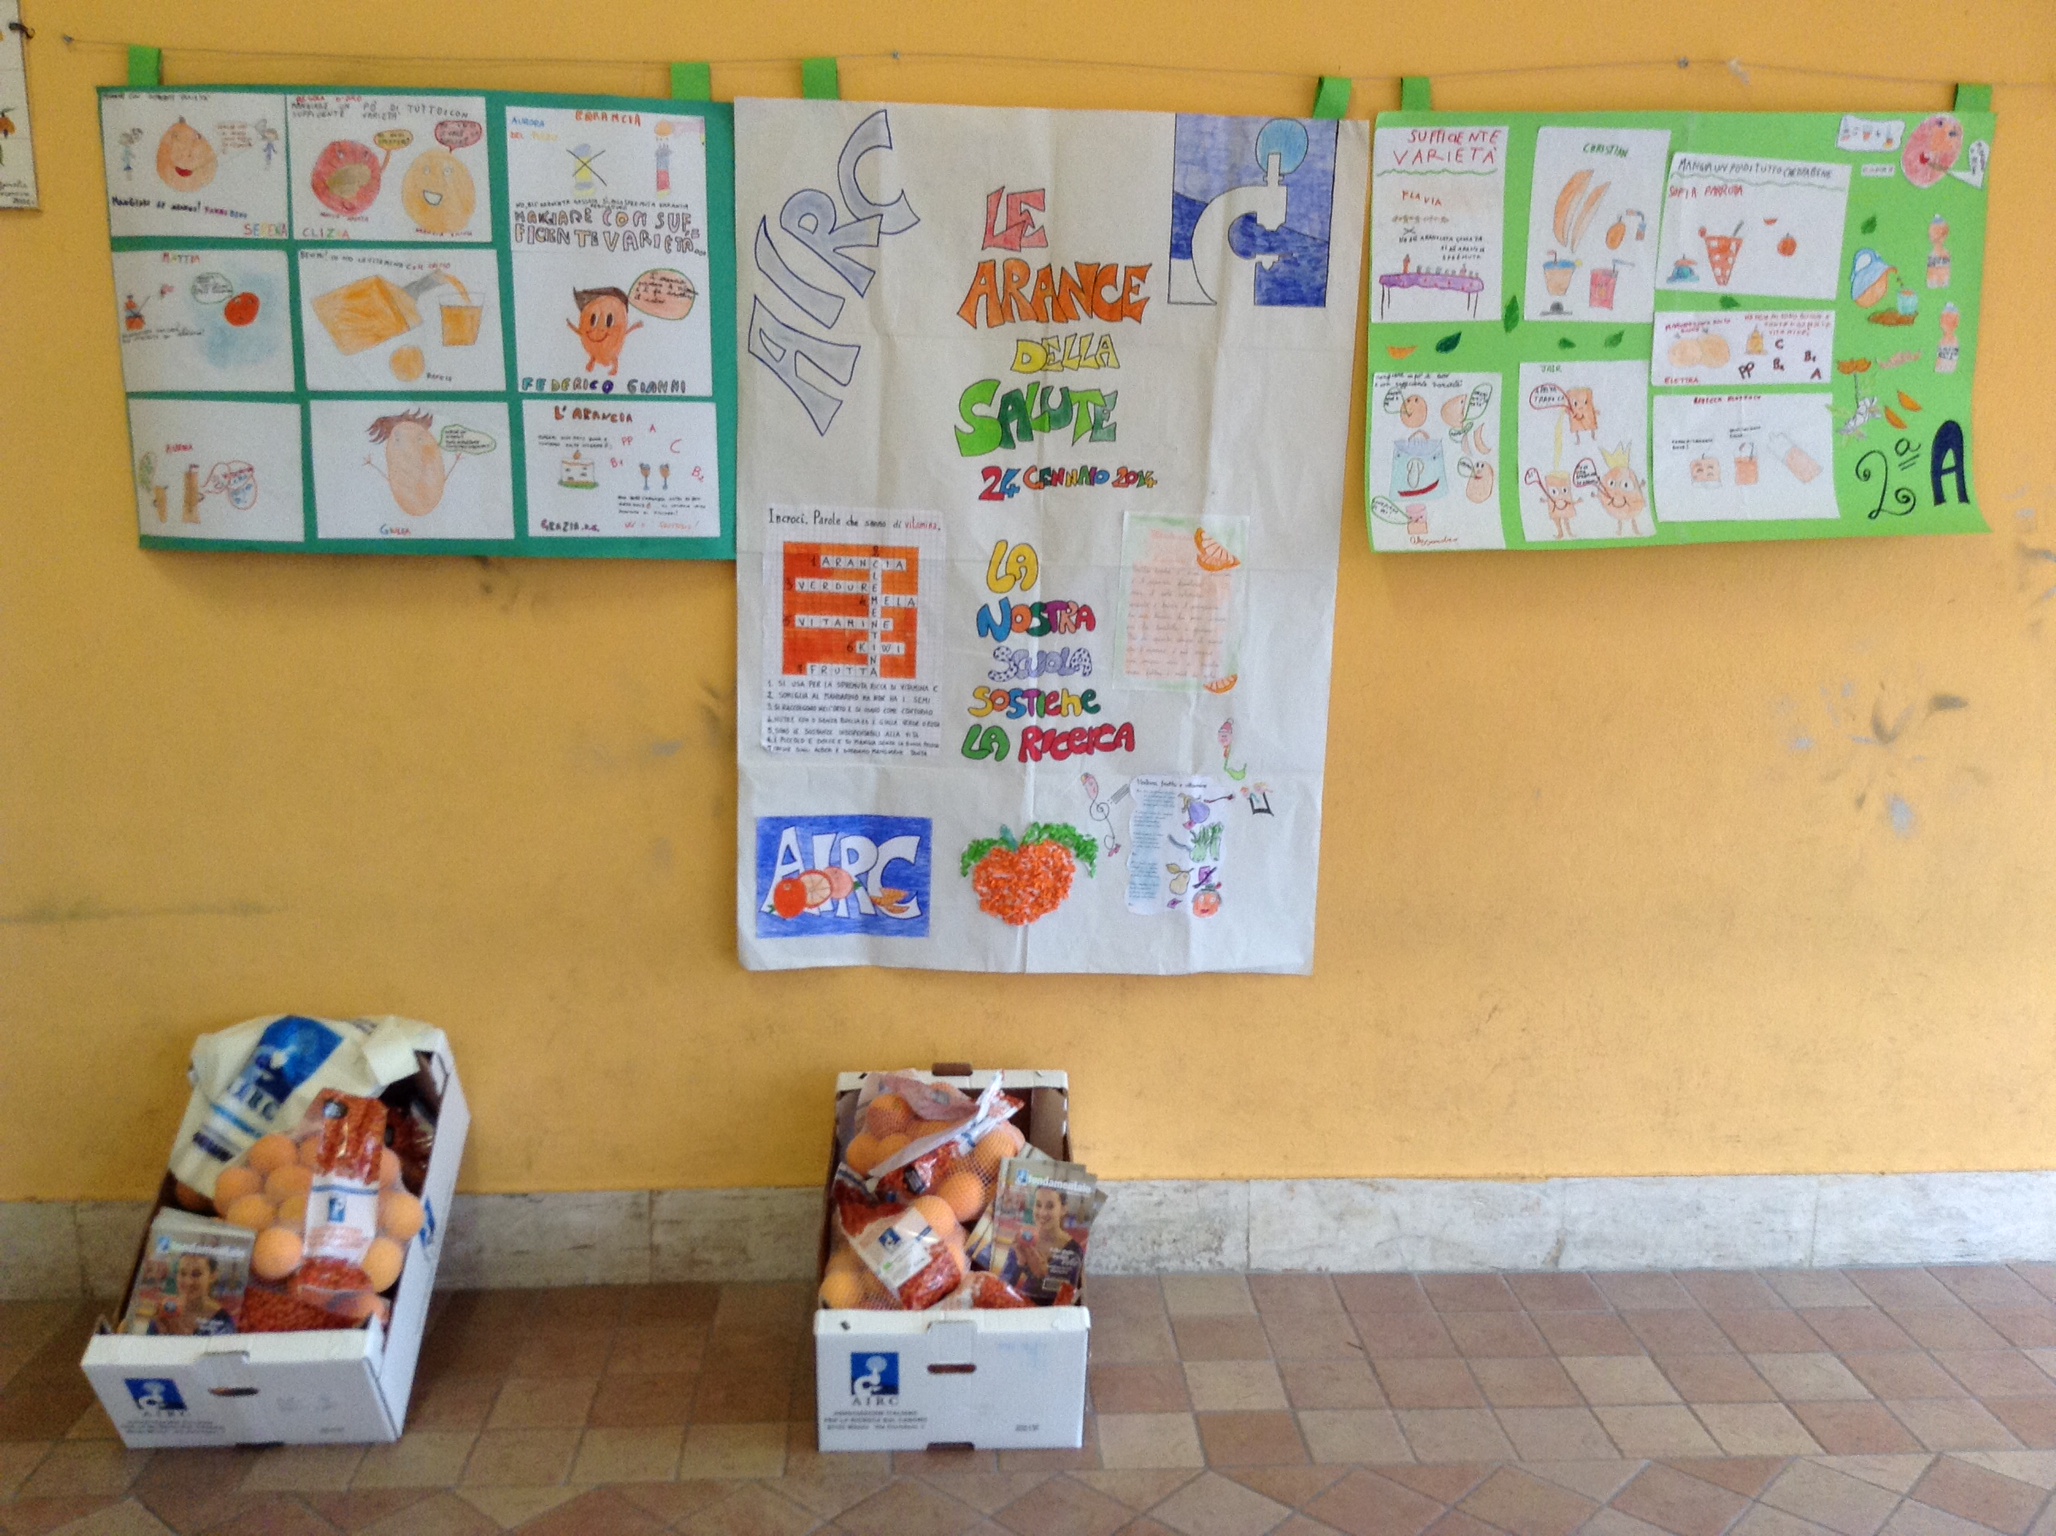 Distribuzione “Arance della salute 2014”: l’esperienza degli alunni del Plesso Repubblica (S. M. Mole)